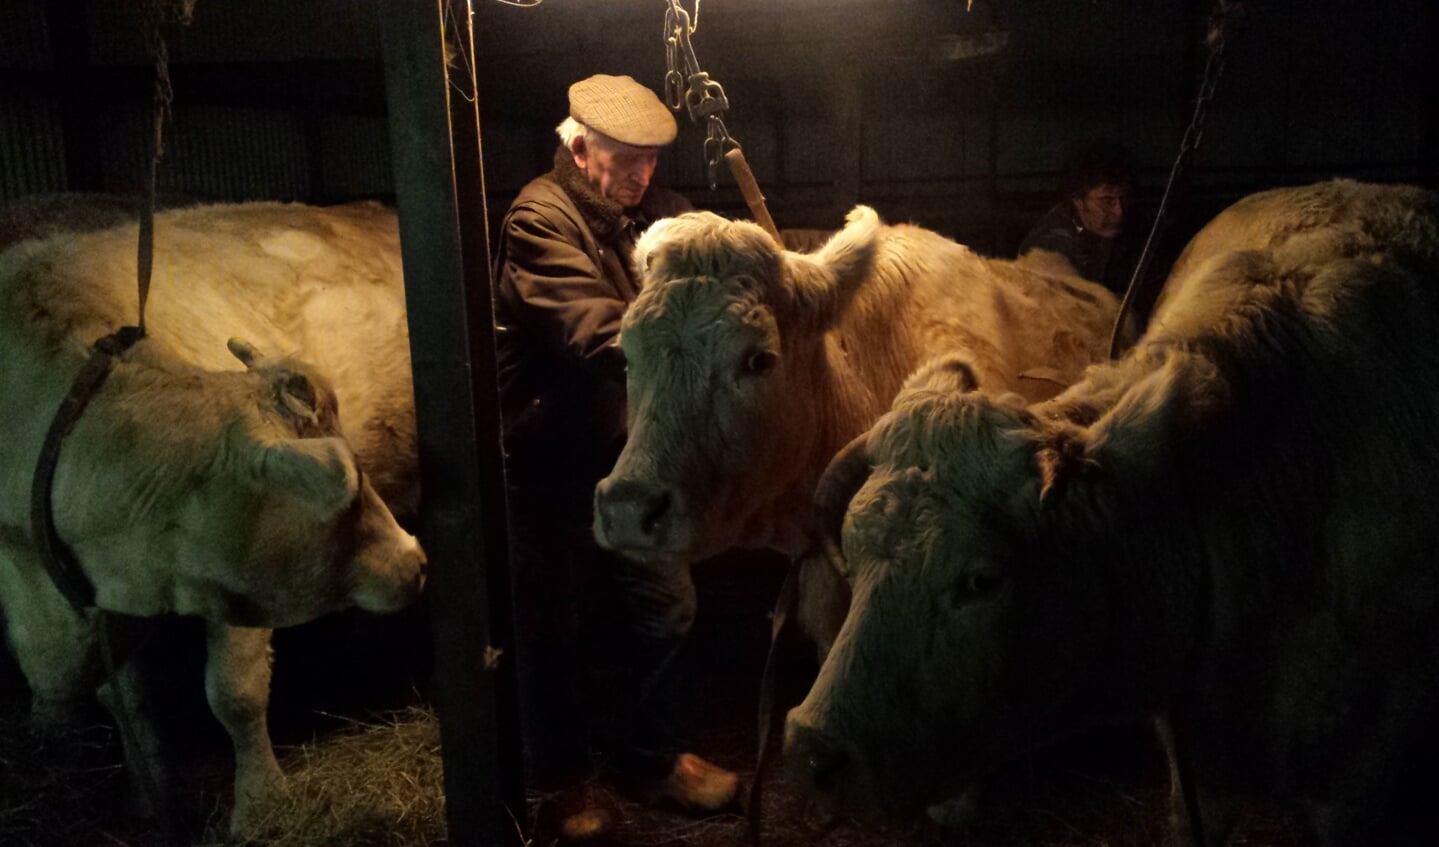 Wout Stormbroek met zijn koeien in de warmte van de stal. (foto Karien Scholten)